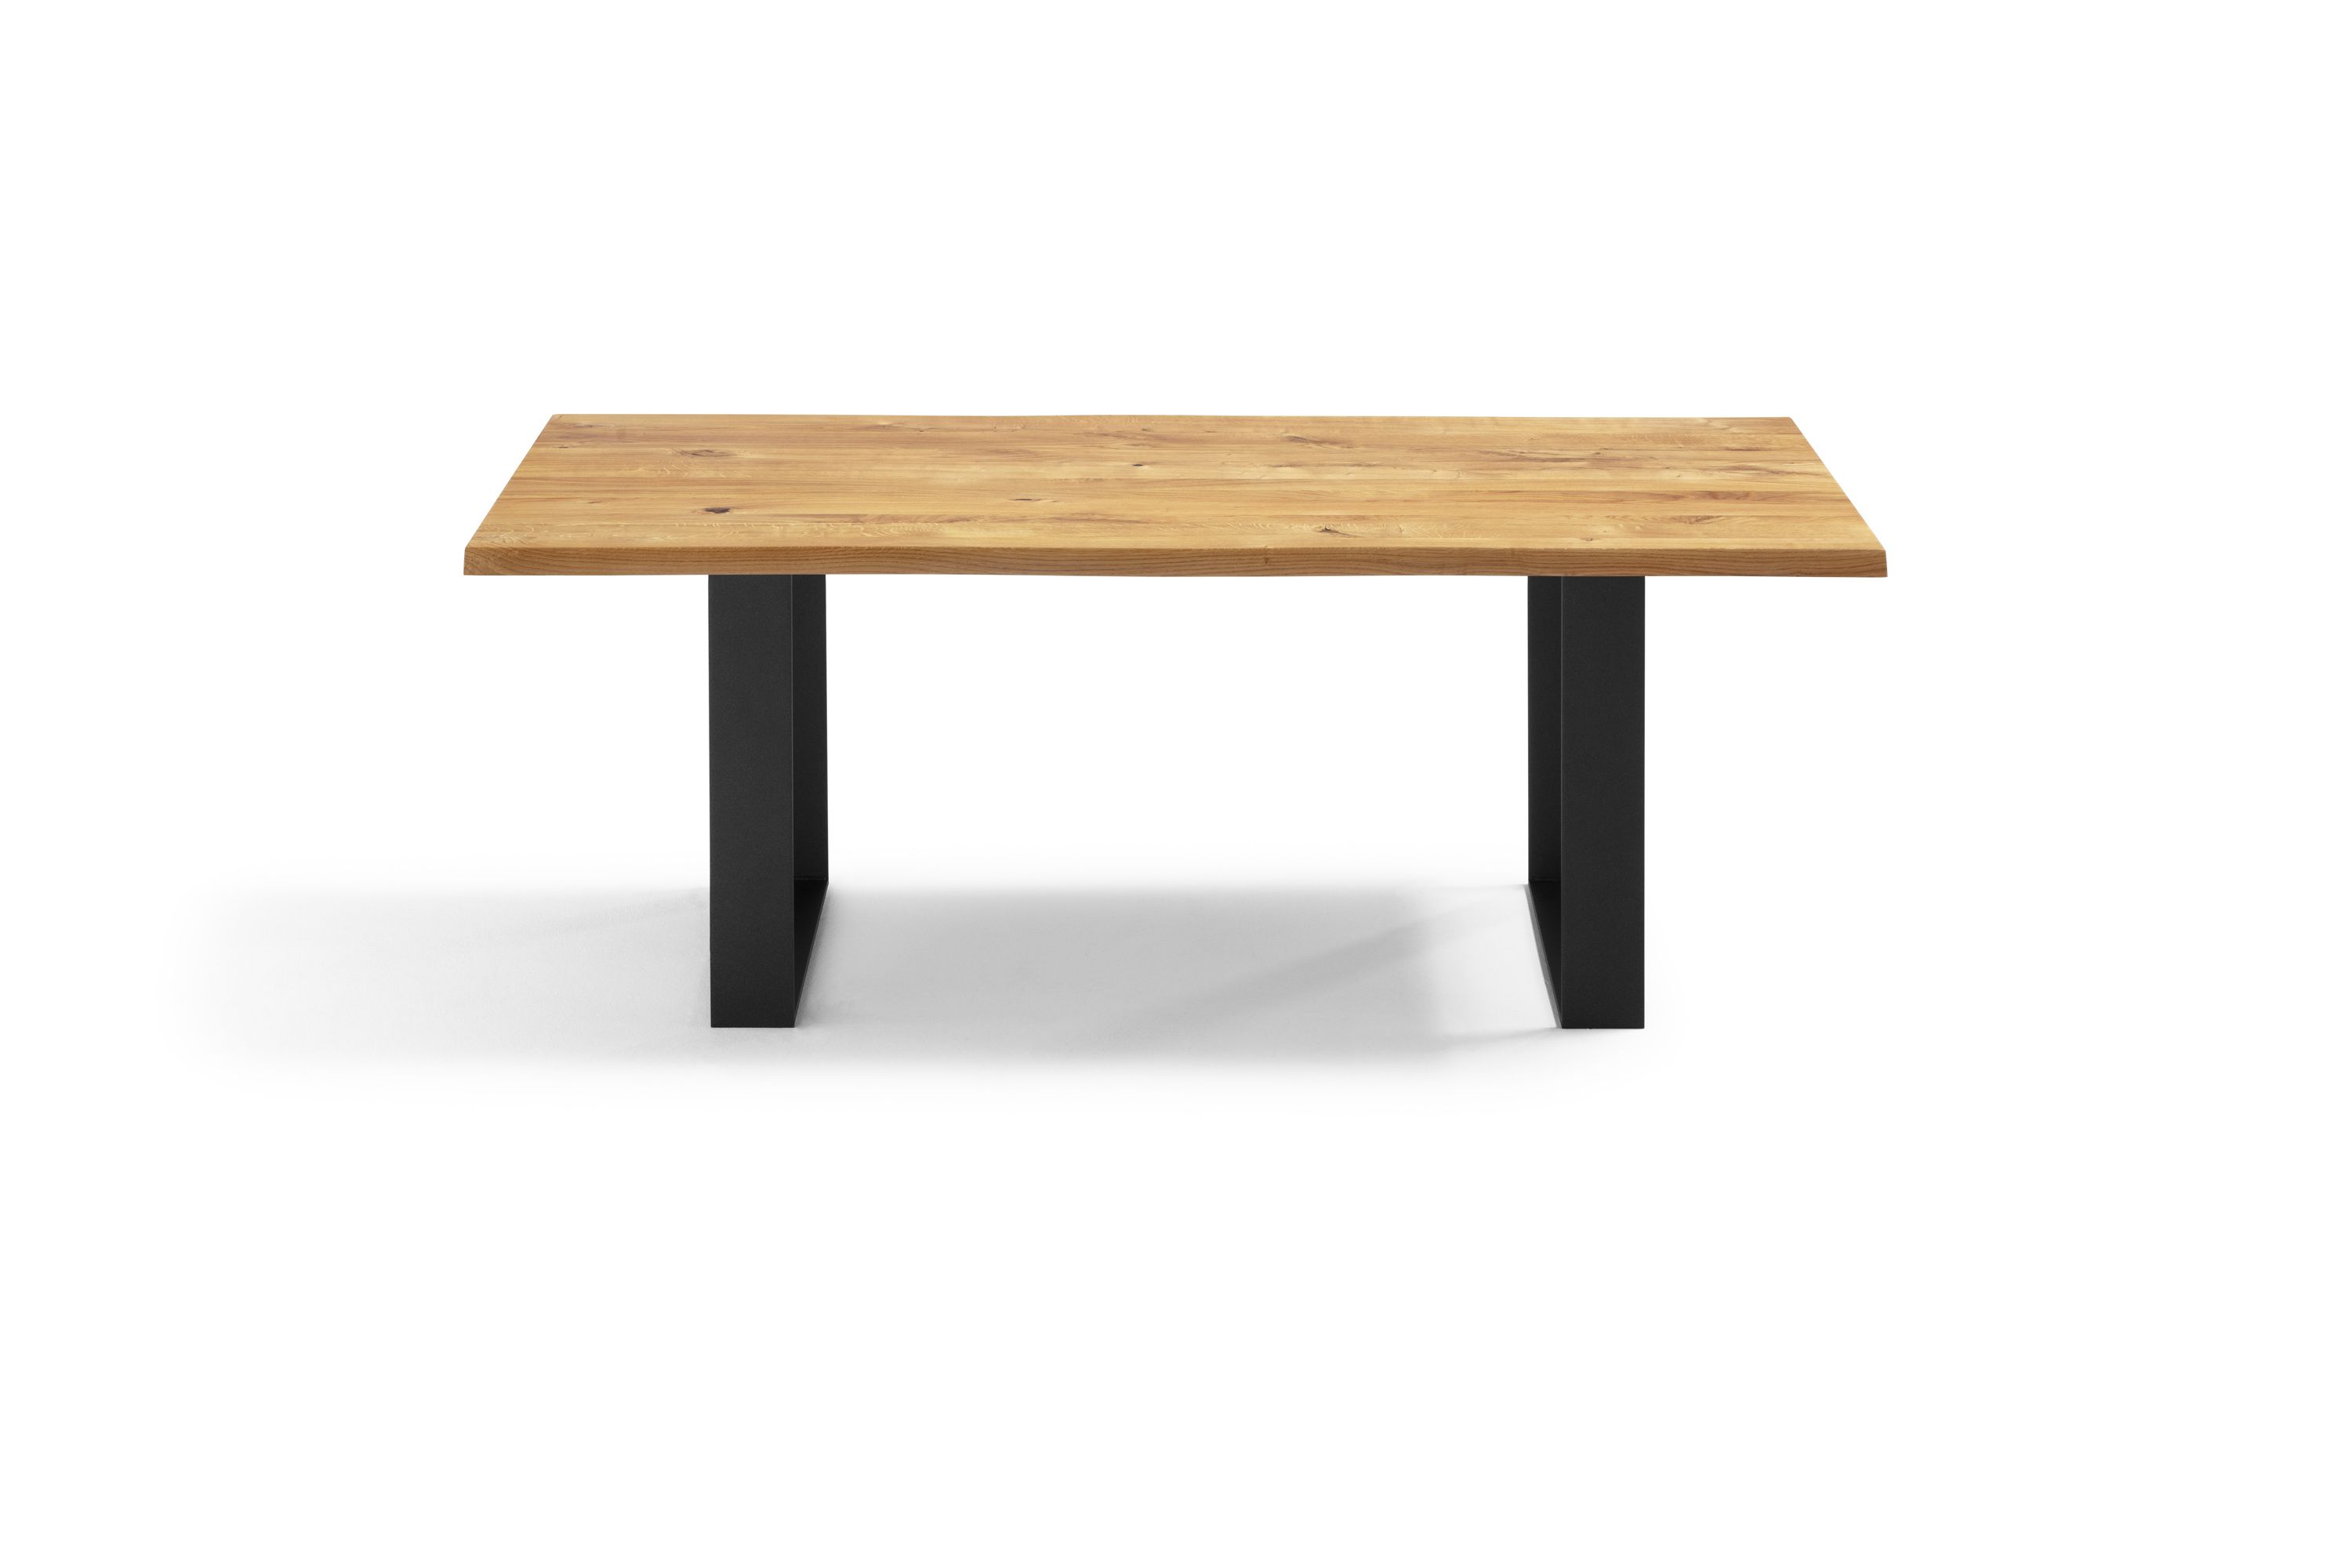 Kufentisch mit Asteiche / Wildeiche Tischplatte - Esstisch Trieste Holz